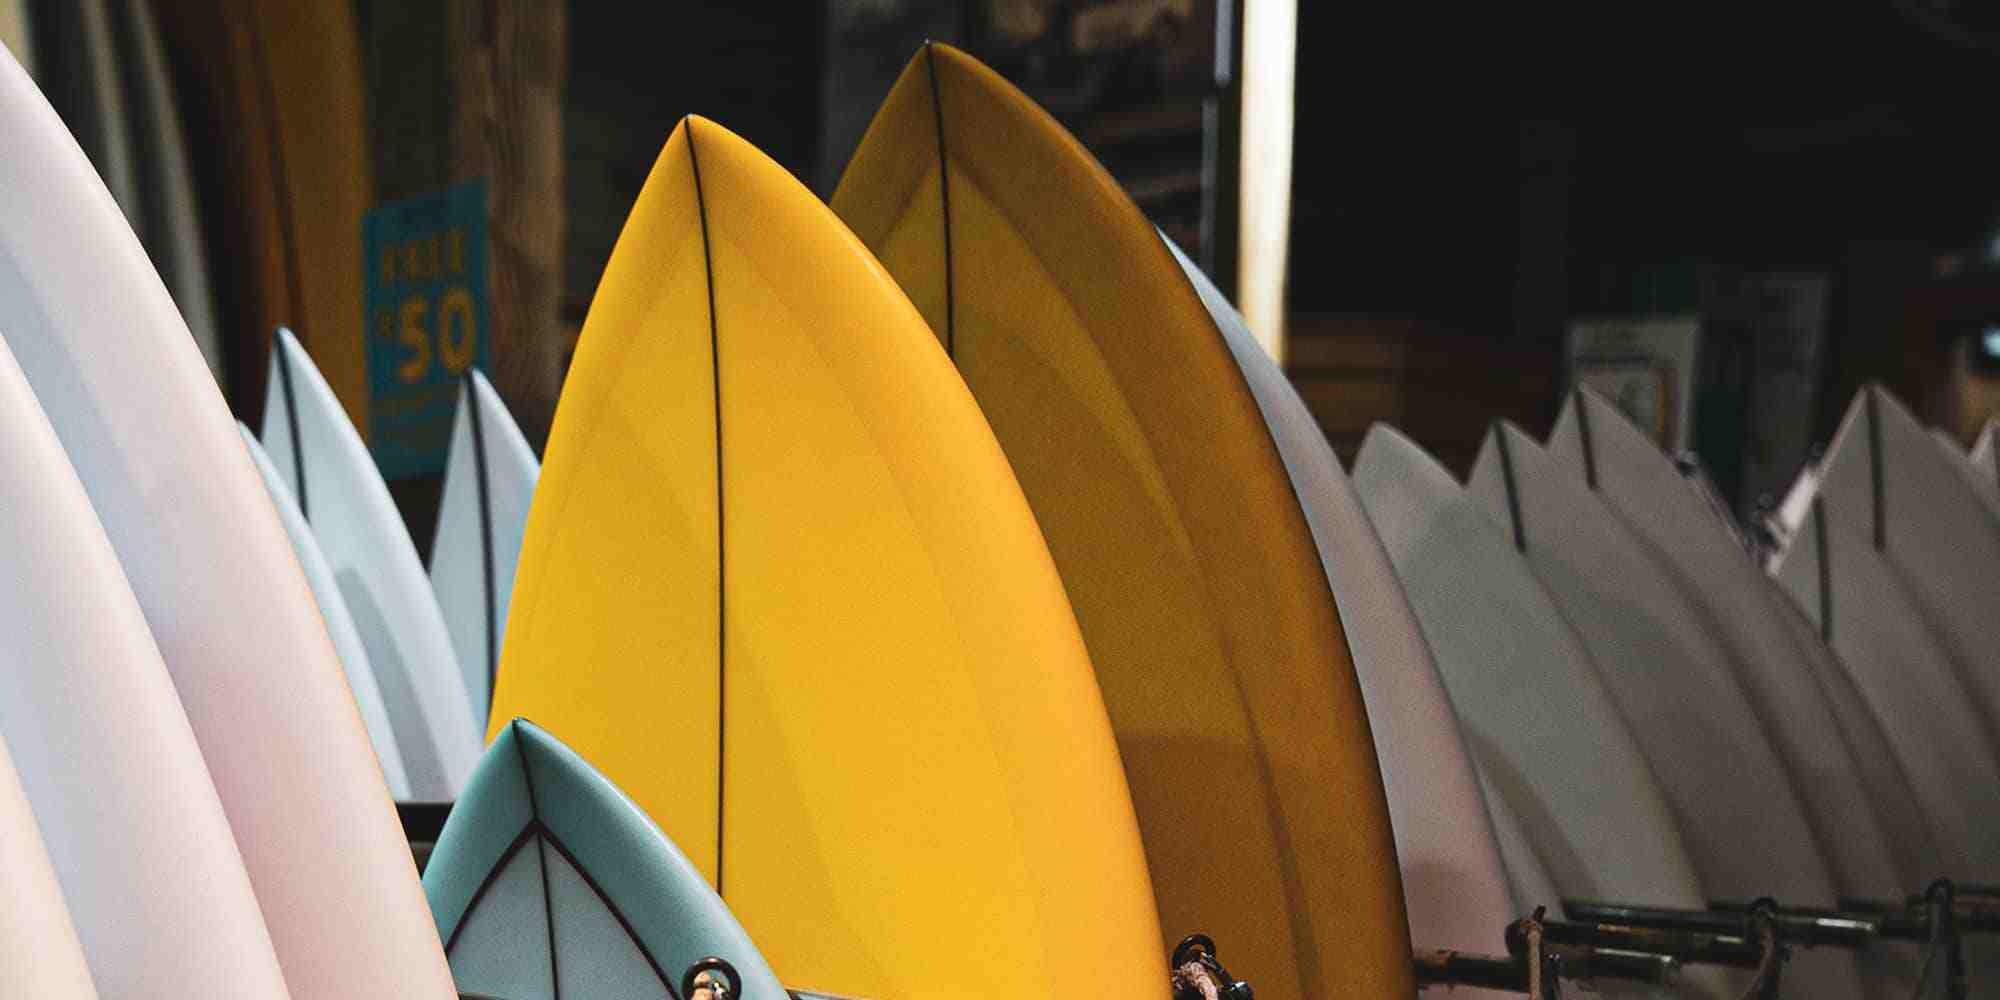 Comment Appelle-t-on la forme d'une planche de surf ?